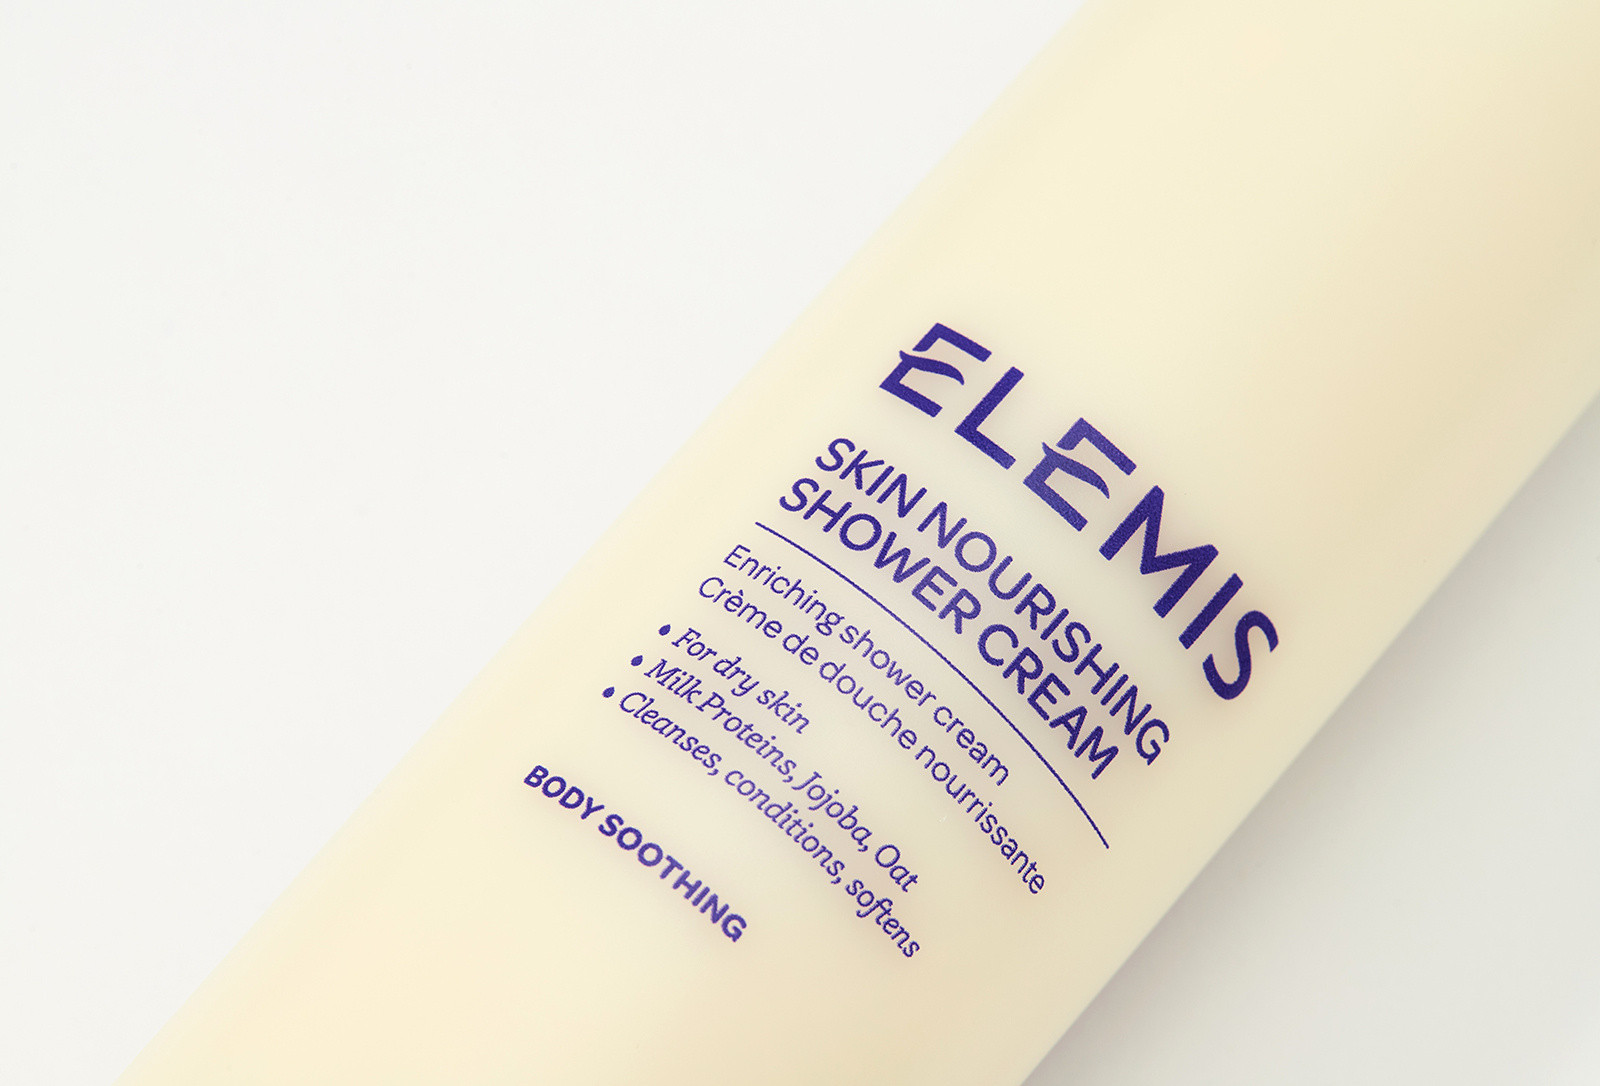 Питательный крем для душа Протеины-Минералы Elemis Skin Nourishing Shower Cream